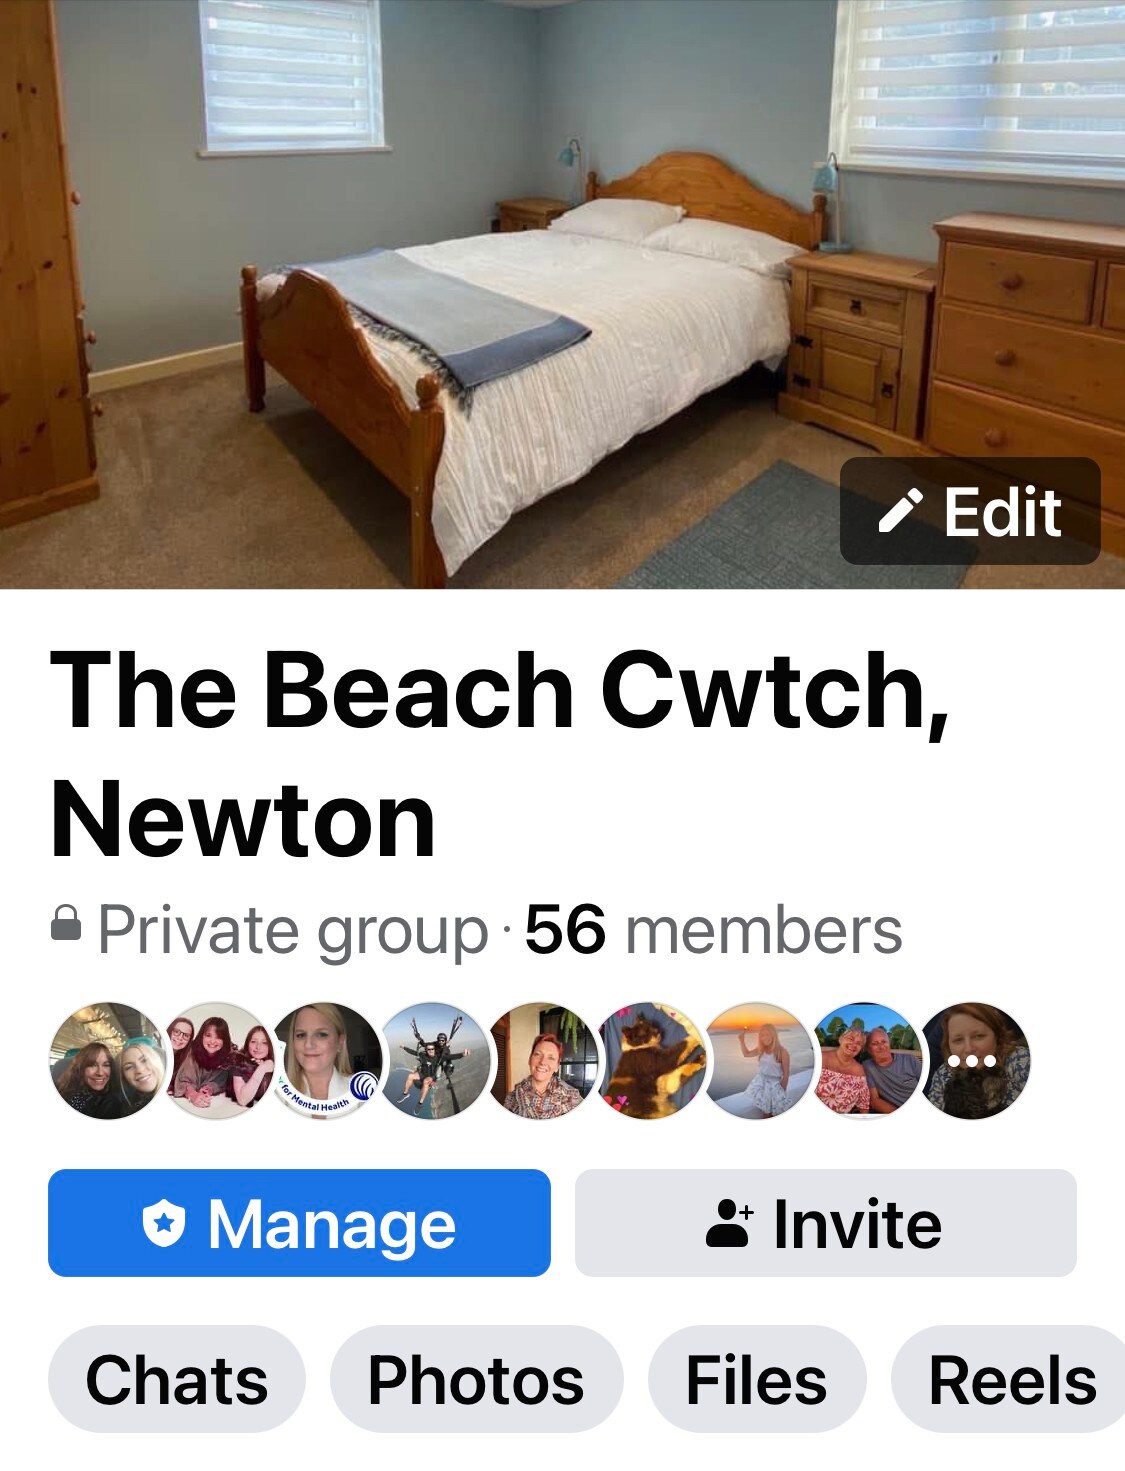 The Beach Cwtch - 1 bed annex near Newton Beach